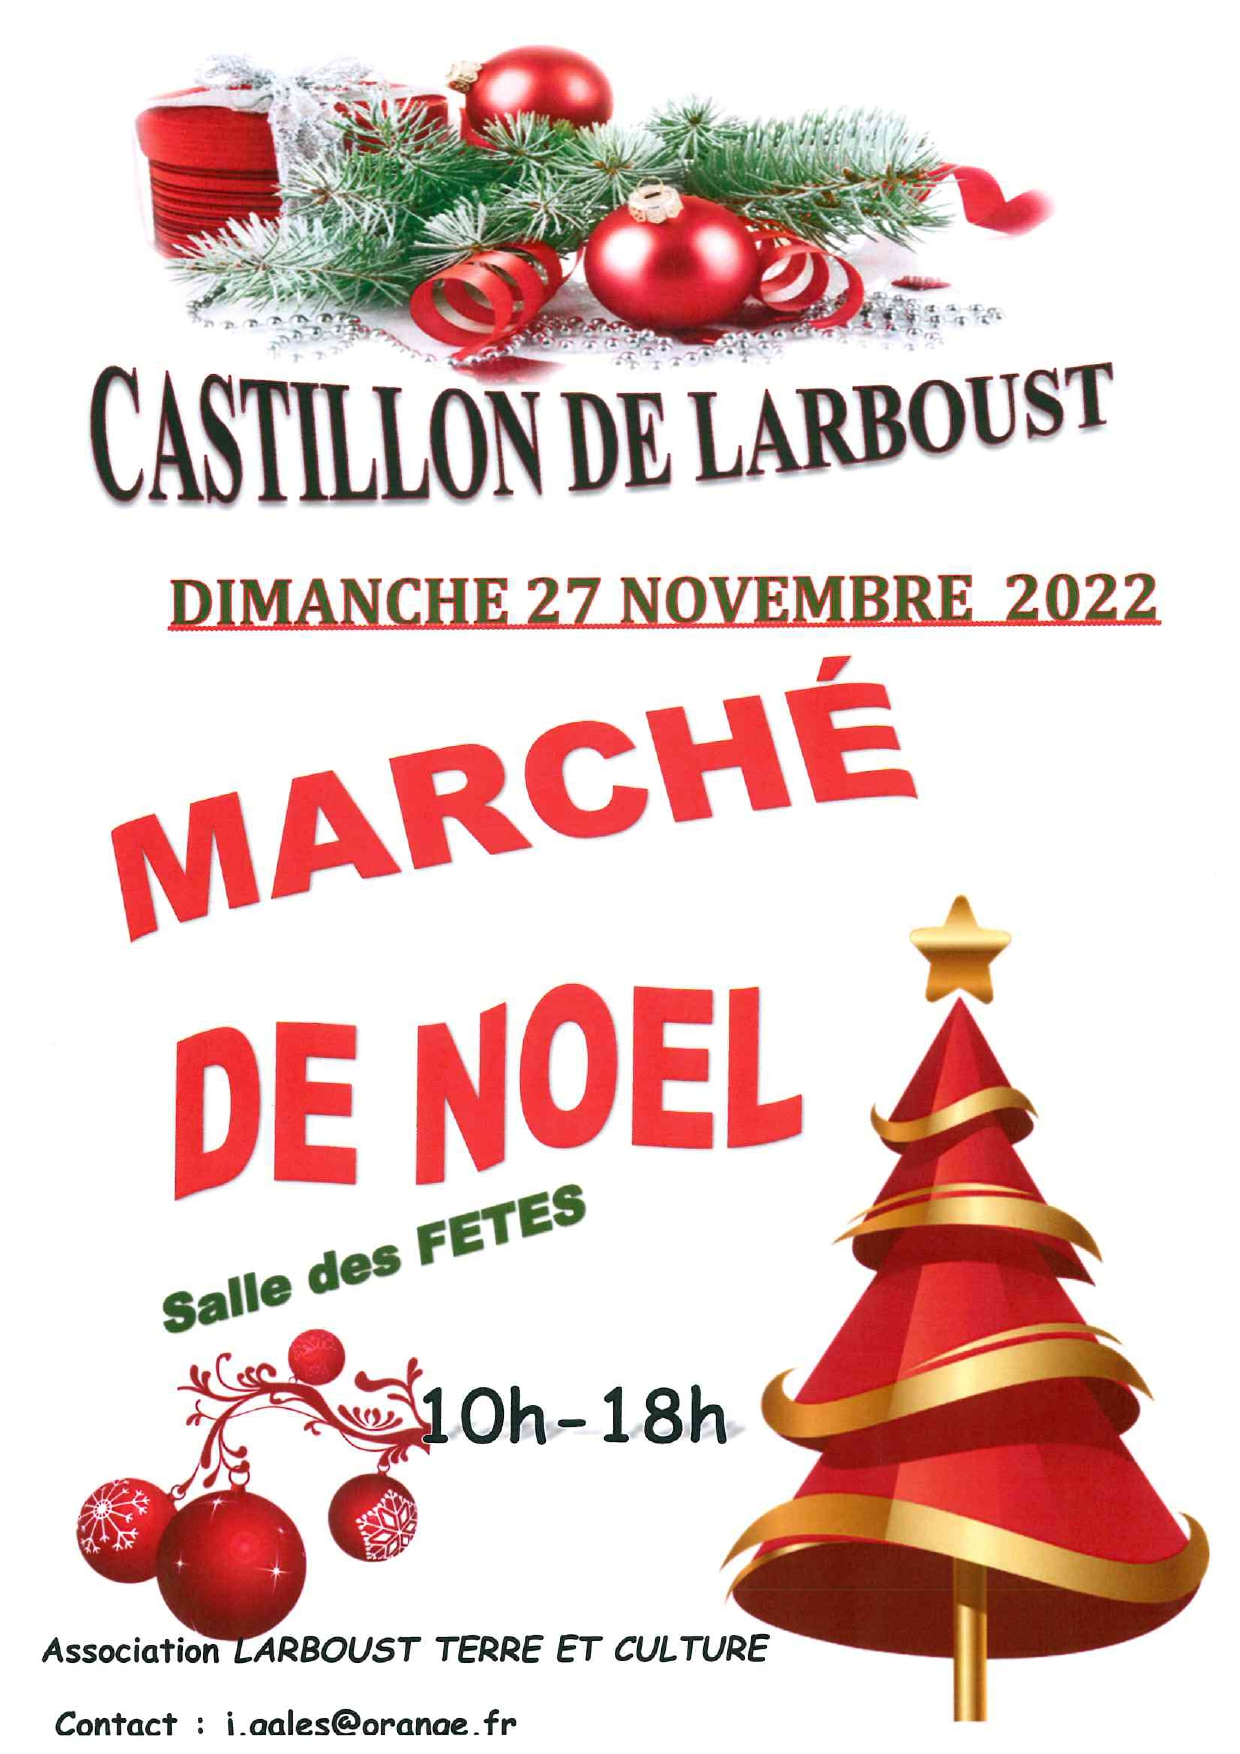 MARCHÉ DE NOËL DE CASTILLON-DE-LARBOUST